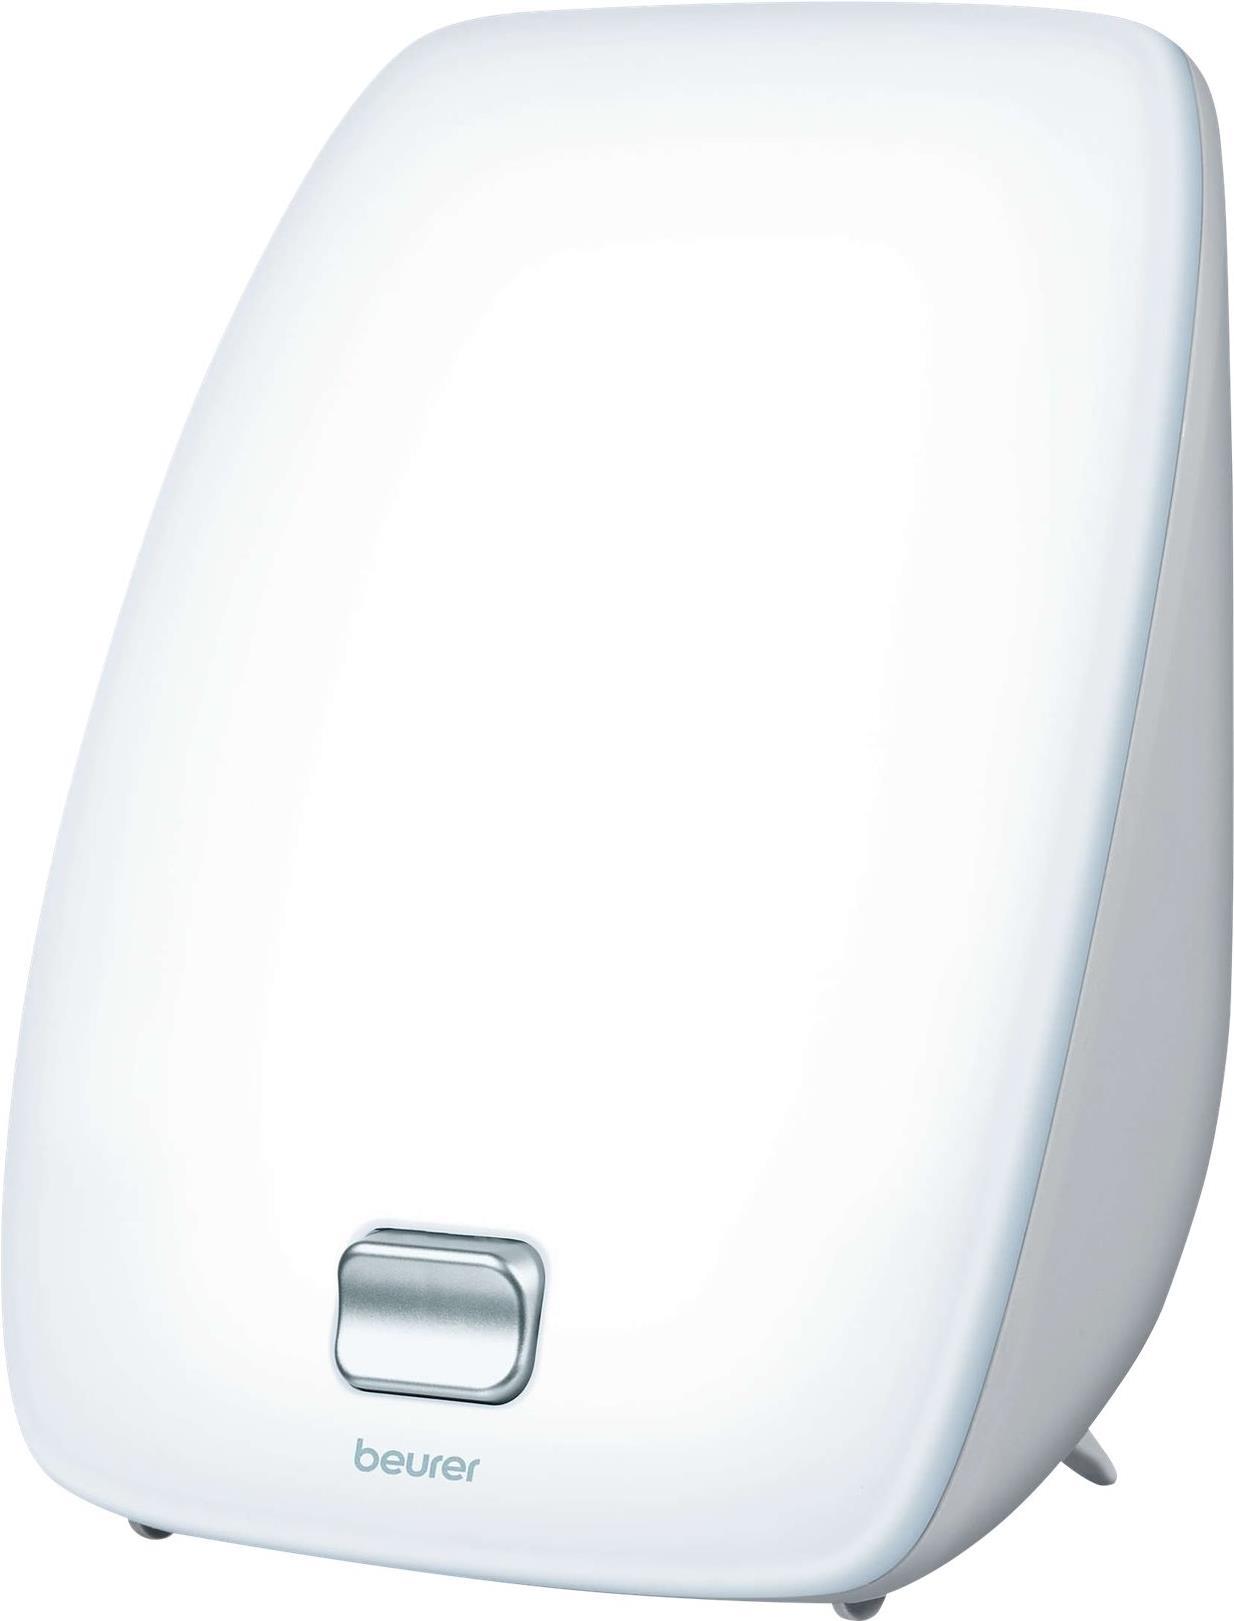 Beurer TL 41 Touch Tageslichtlampe mit Touch Button, gesteigertes Wohlbefinden durch Simulation von Tageslicht, ideal für den Schreibtisch (60811)